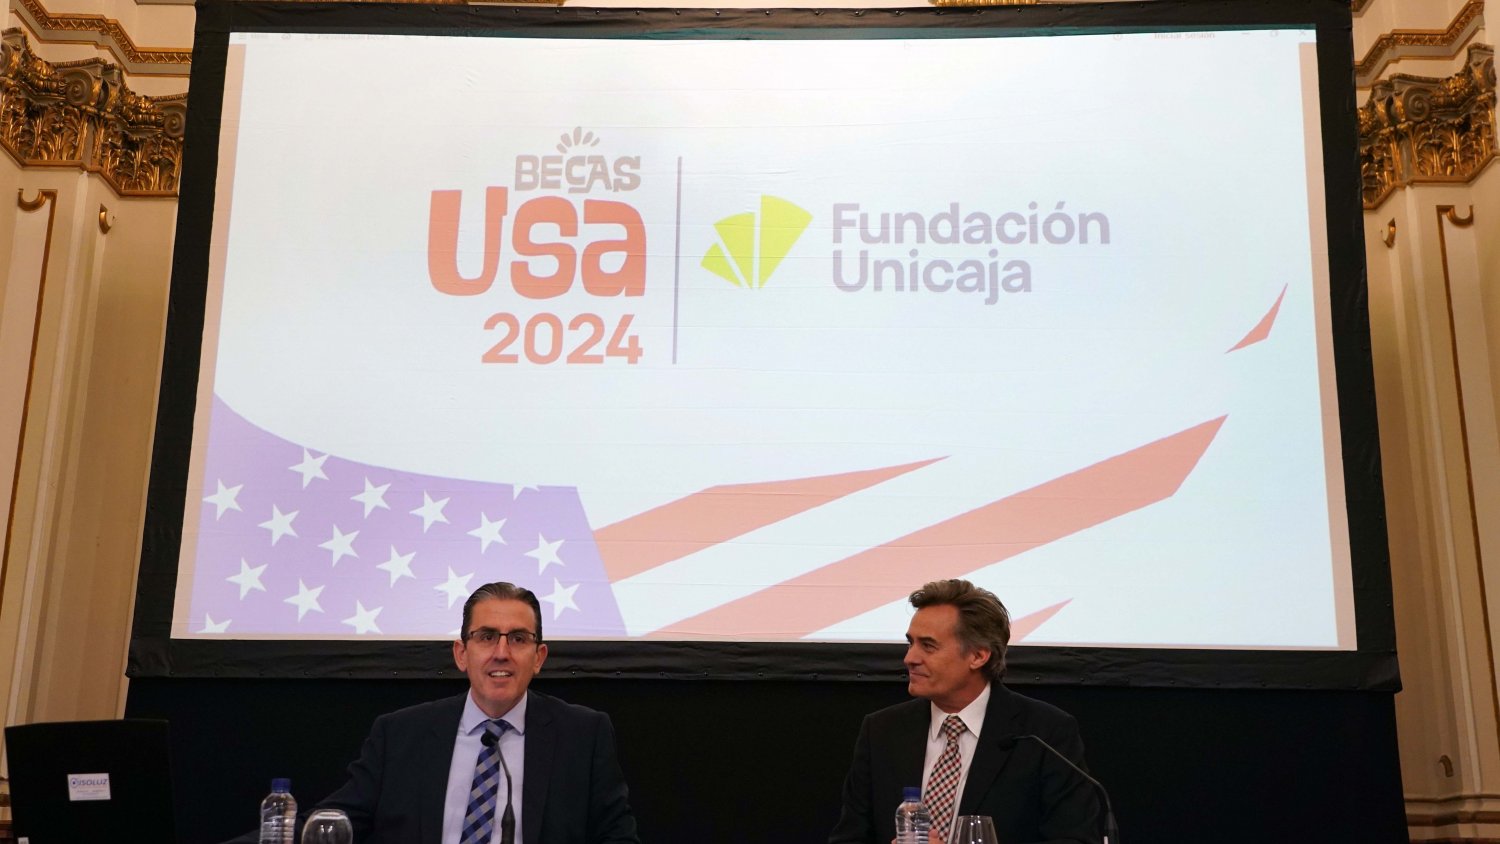 Fundación Unicaja convoca sus Becas USA 2024 para vivir en EE. UU. una experiencia lingüística y cultural